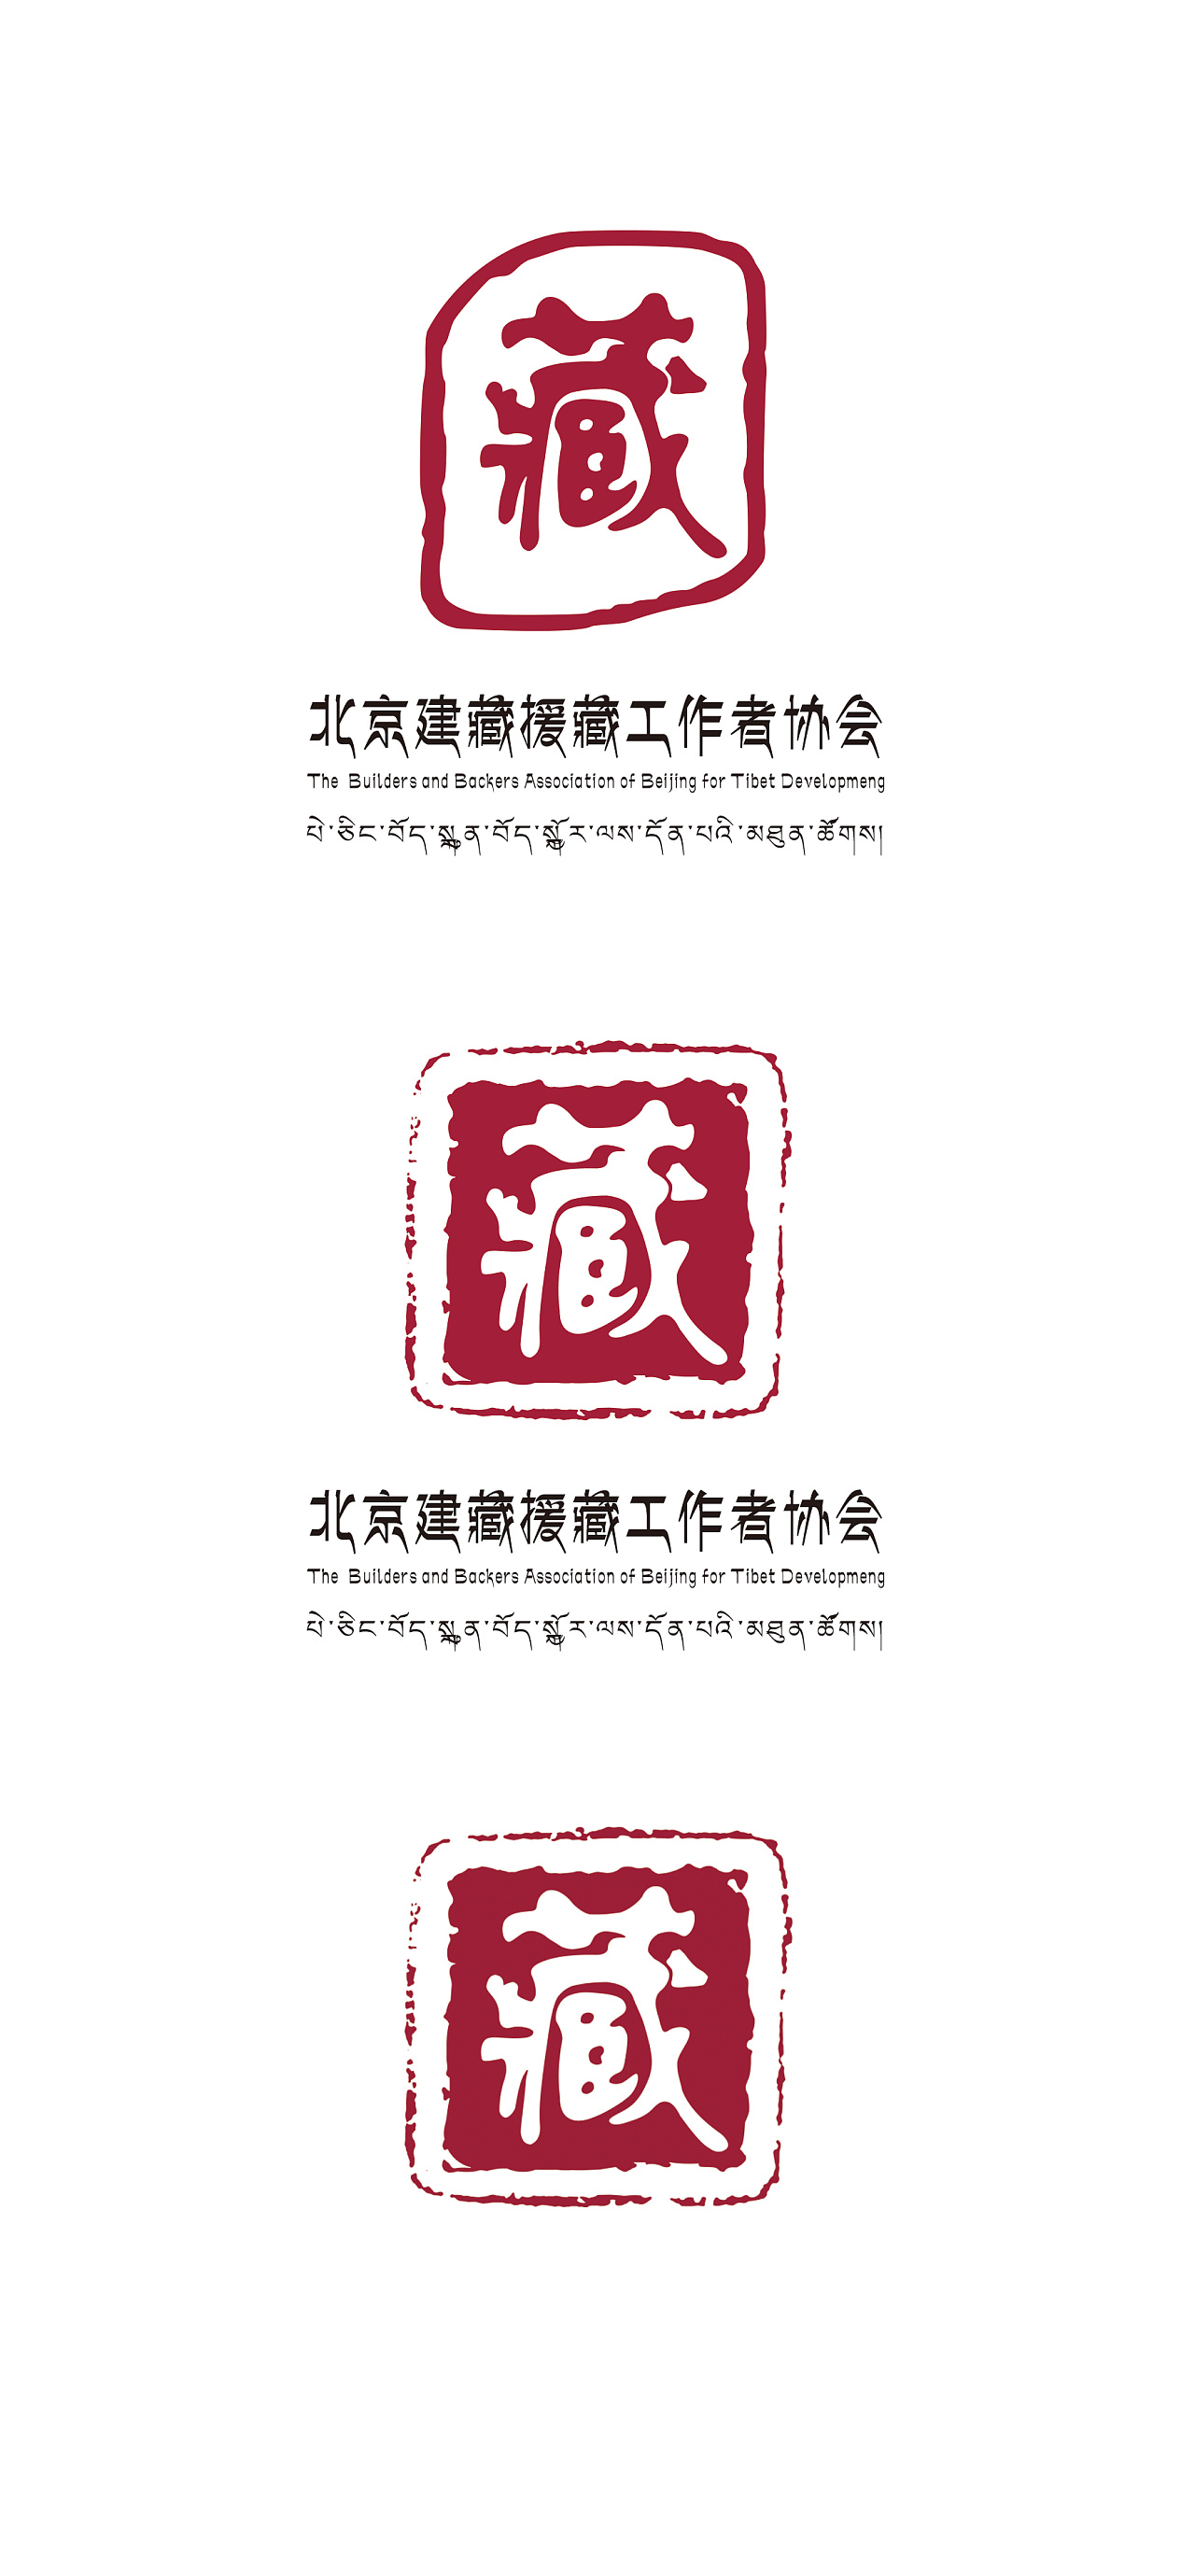 建藏援藏协会会标 logo